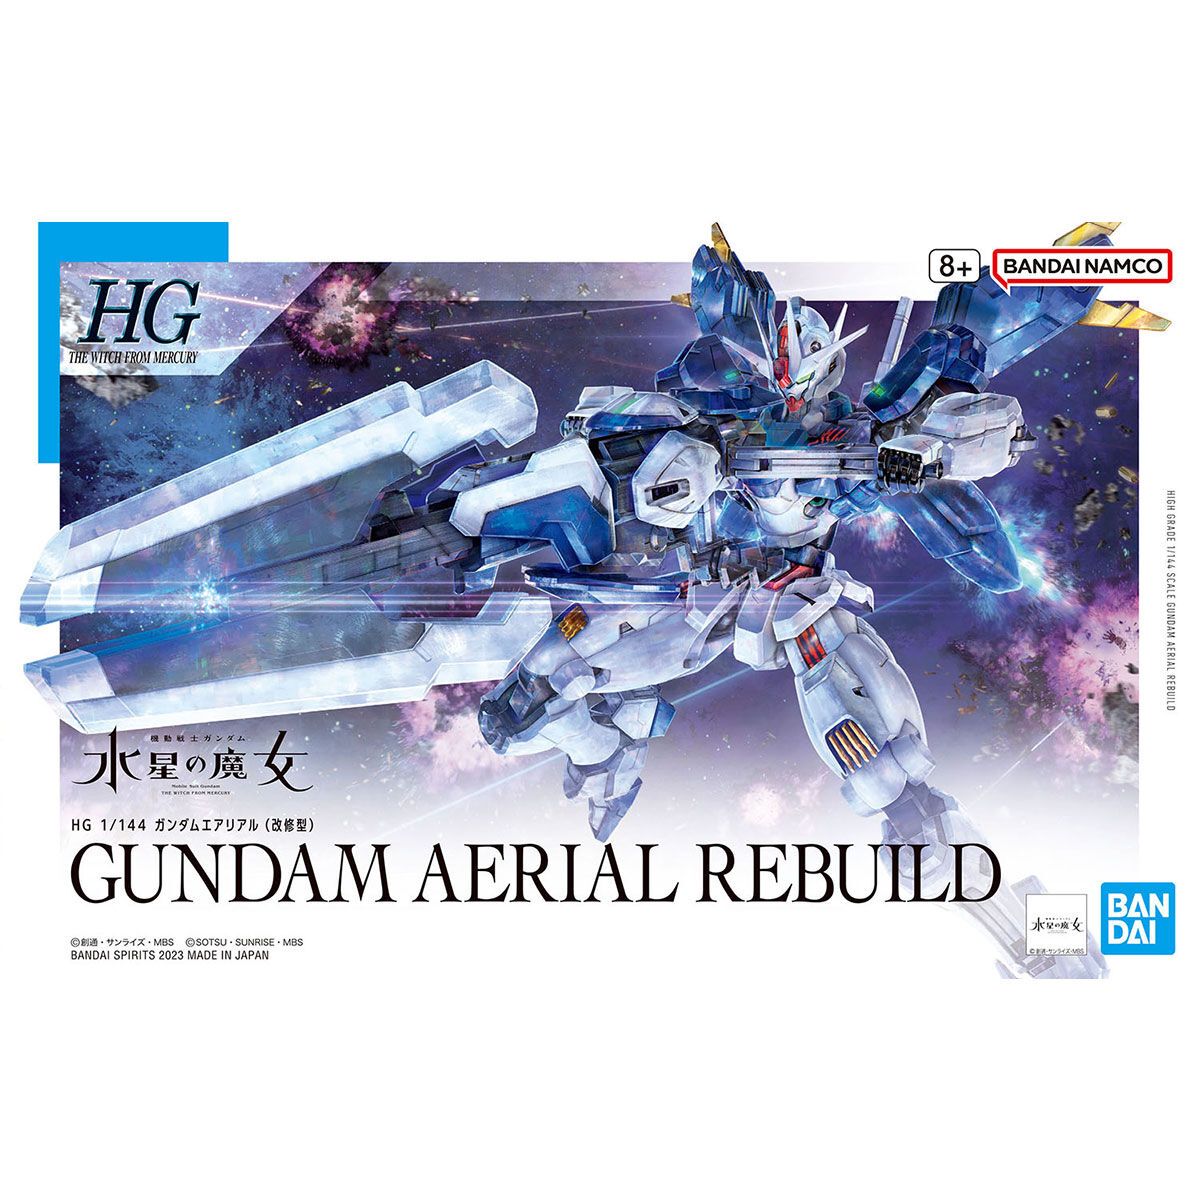 Bandai 1/144 Scale HG Gundam Aerial Rebuild Model Kit